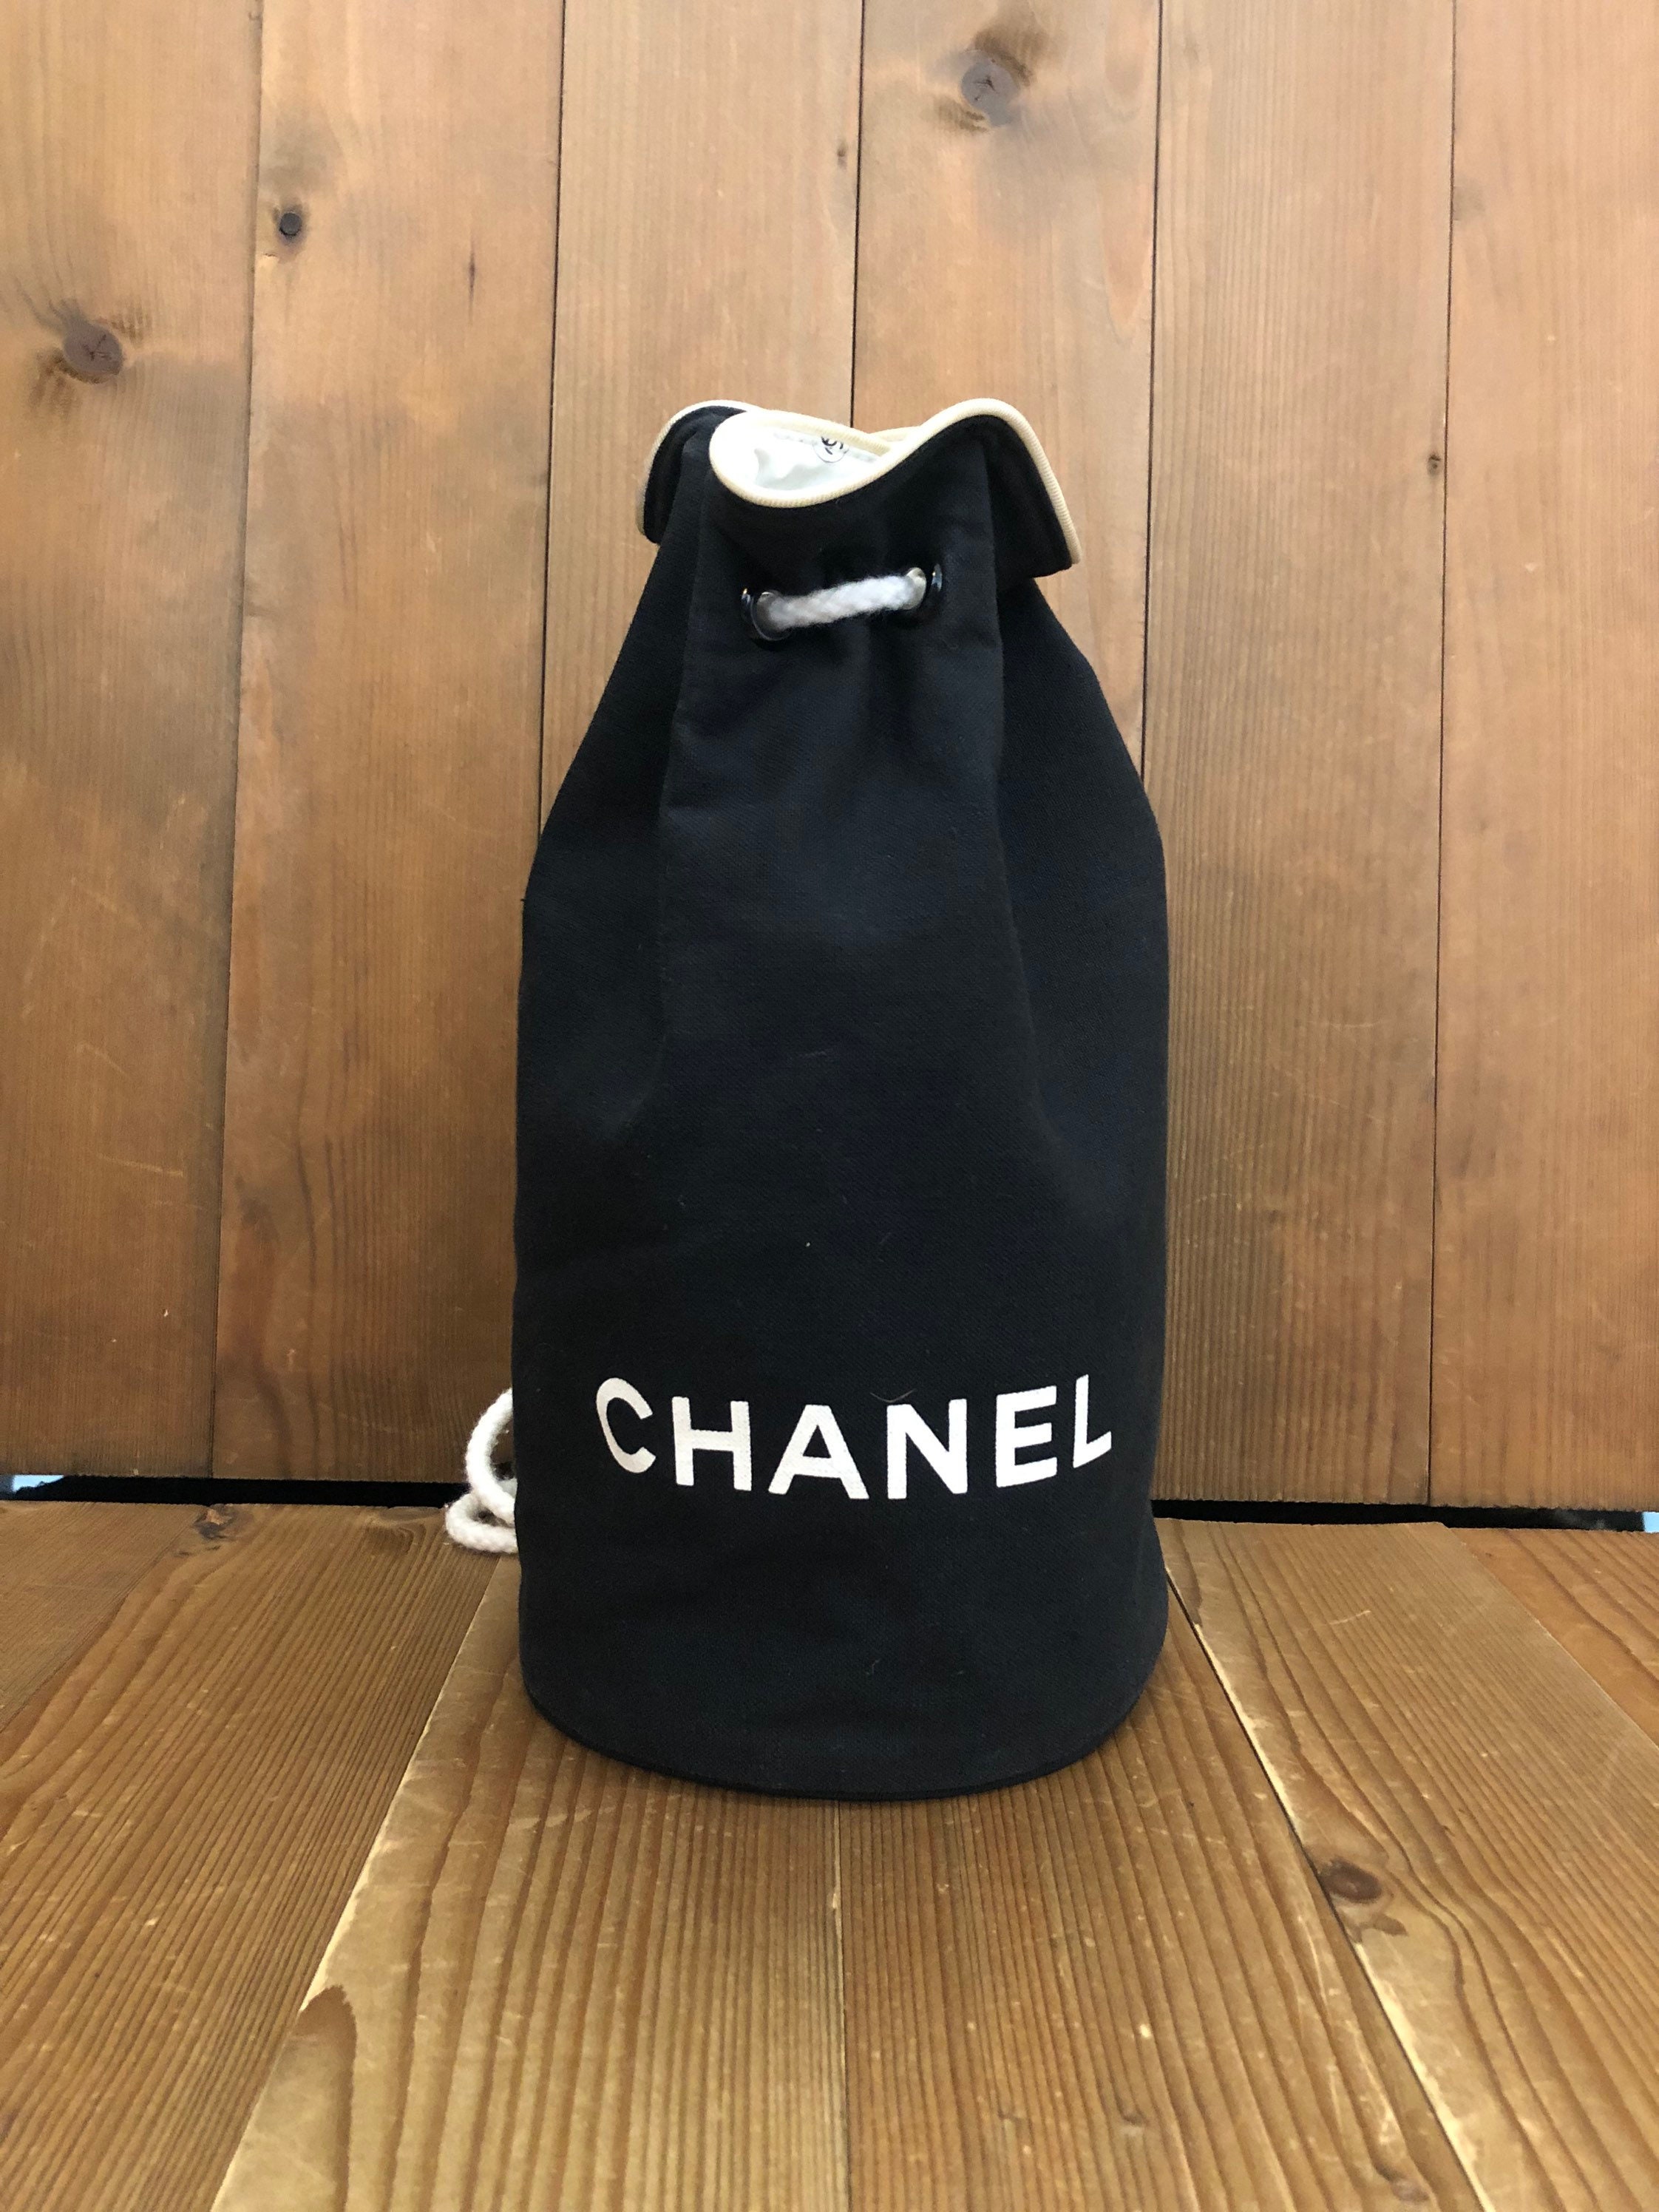 Chanel vip beaute gift - Gem